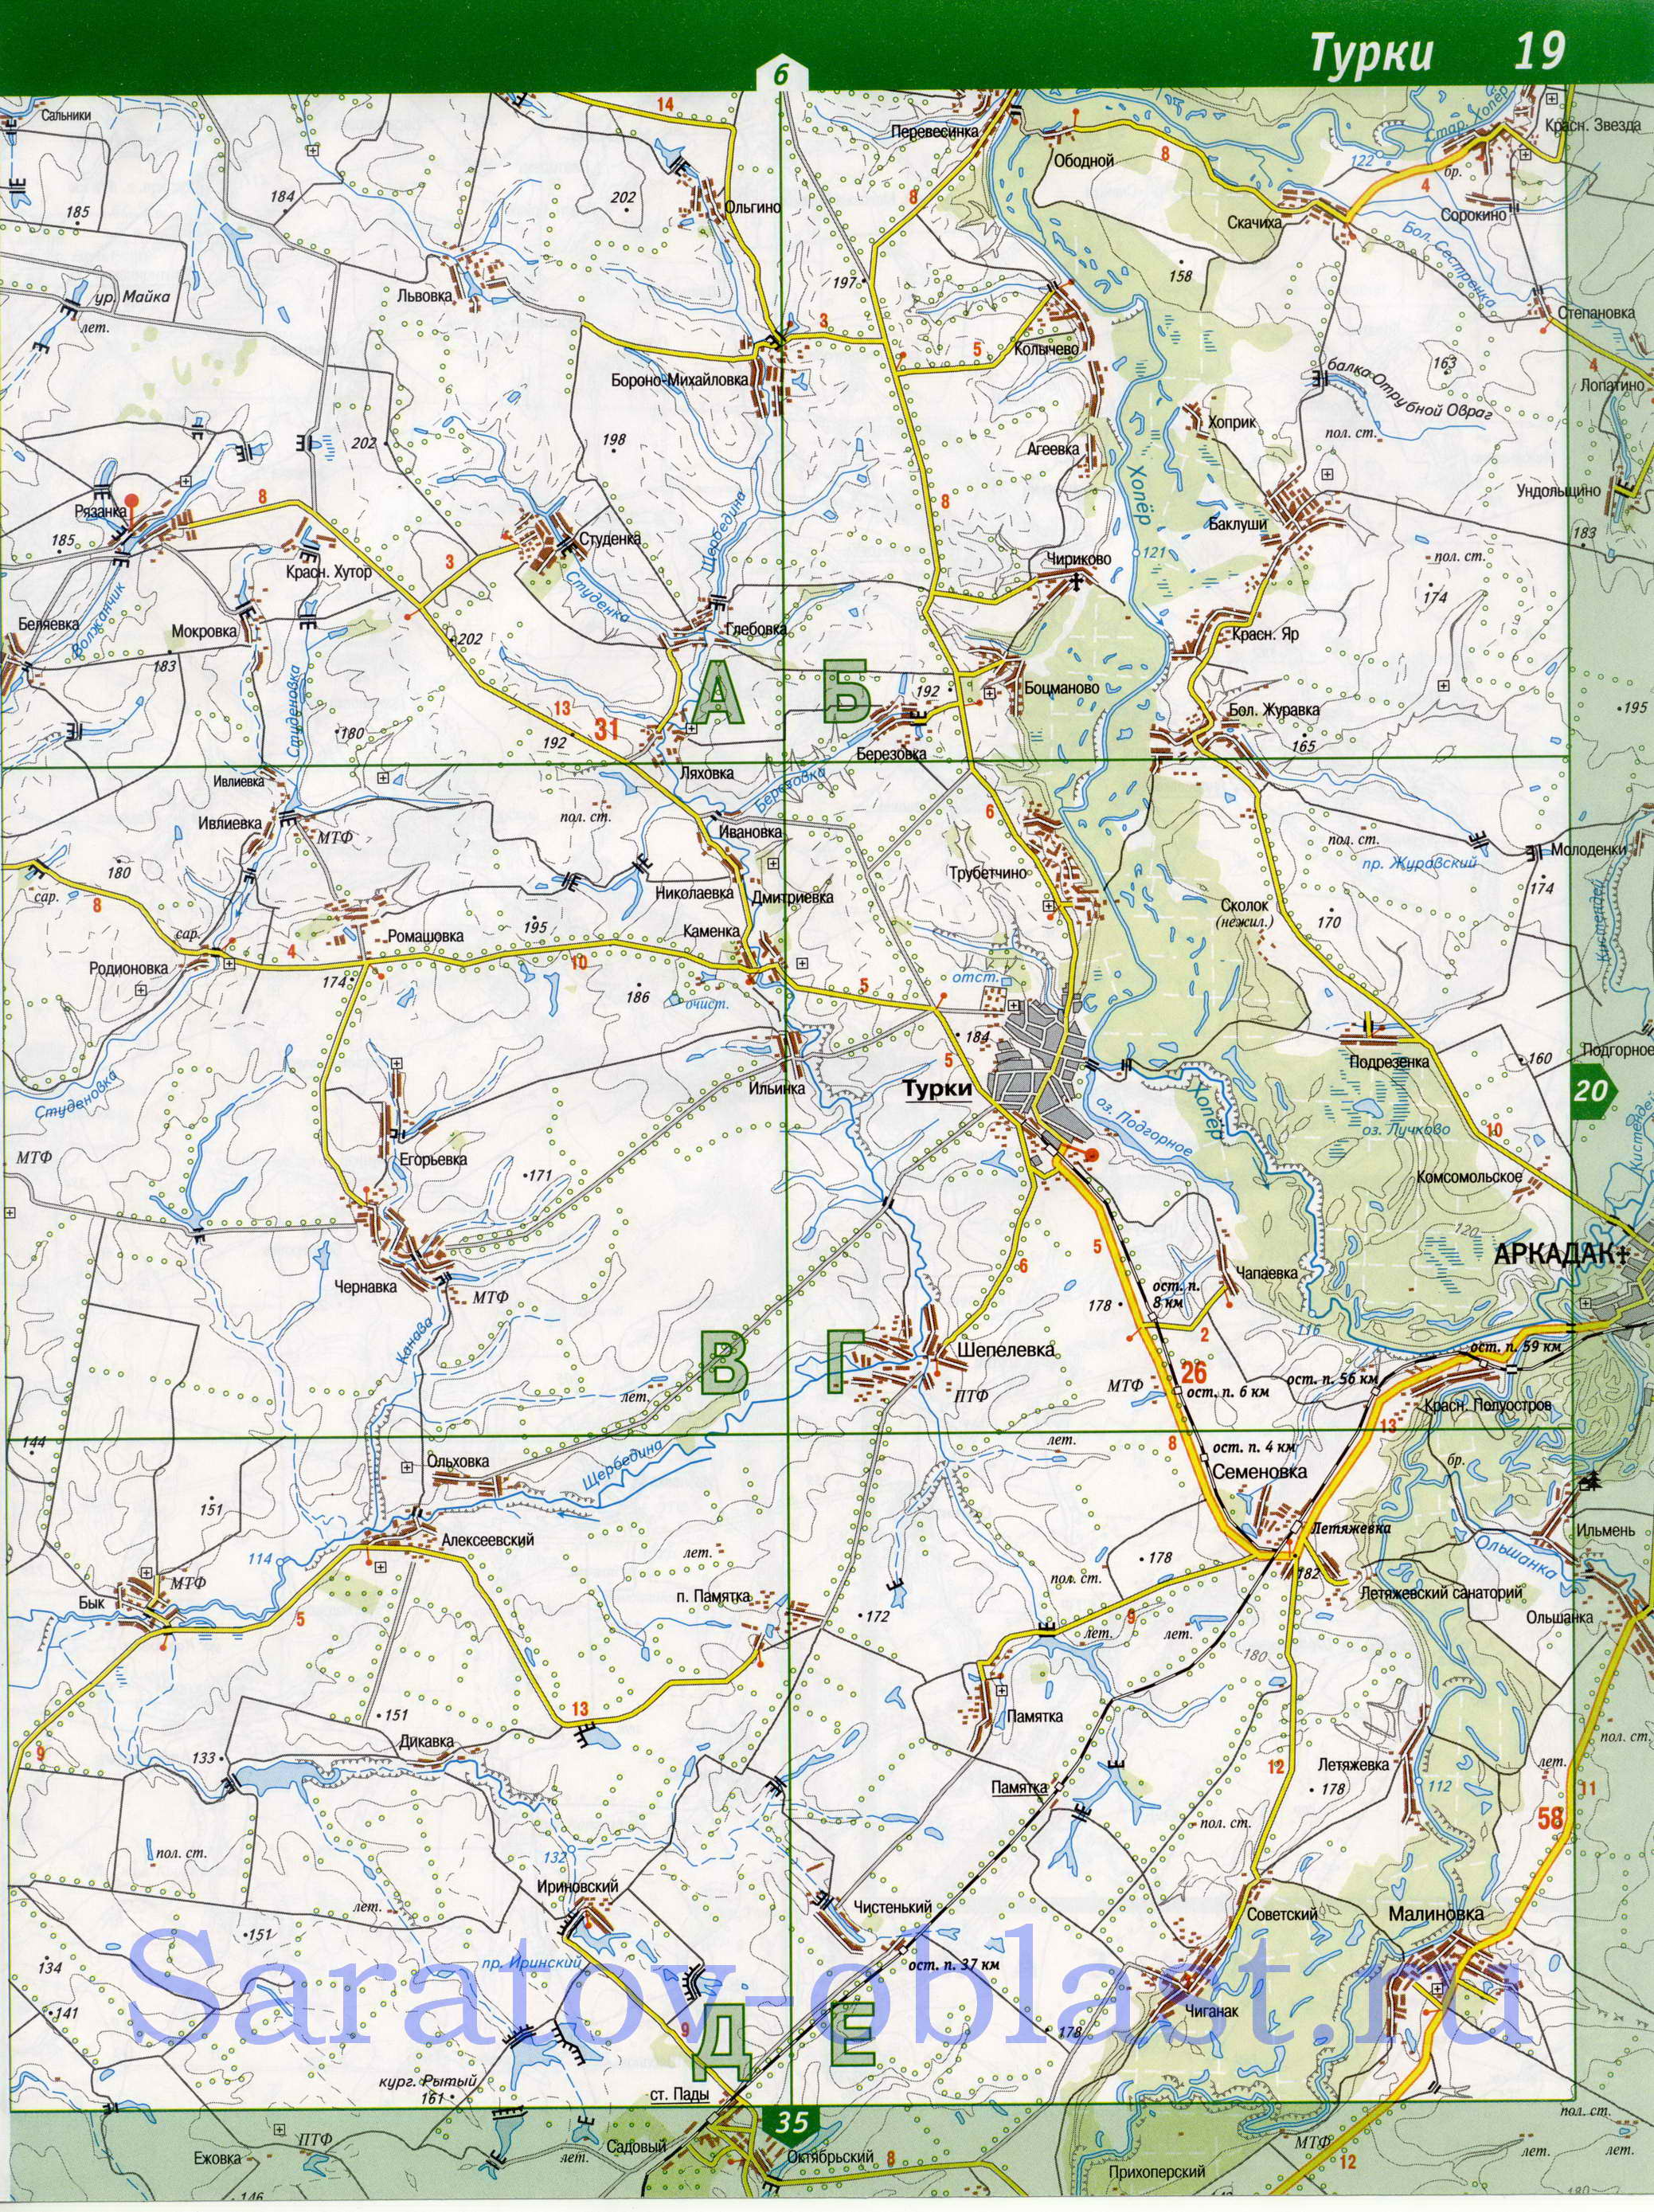 Карта Турковского района. Подробная карта - Турковский район Саратовской области, B0 - 